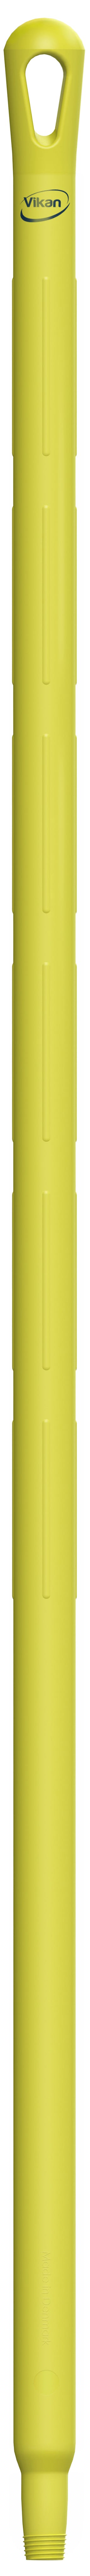 Vikan 29606 geel ultra hygiene kunststof steel 130cm